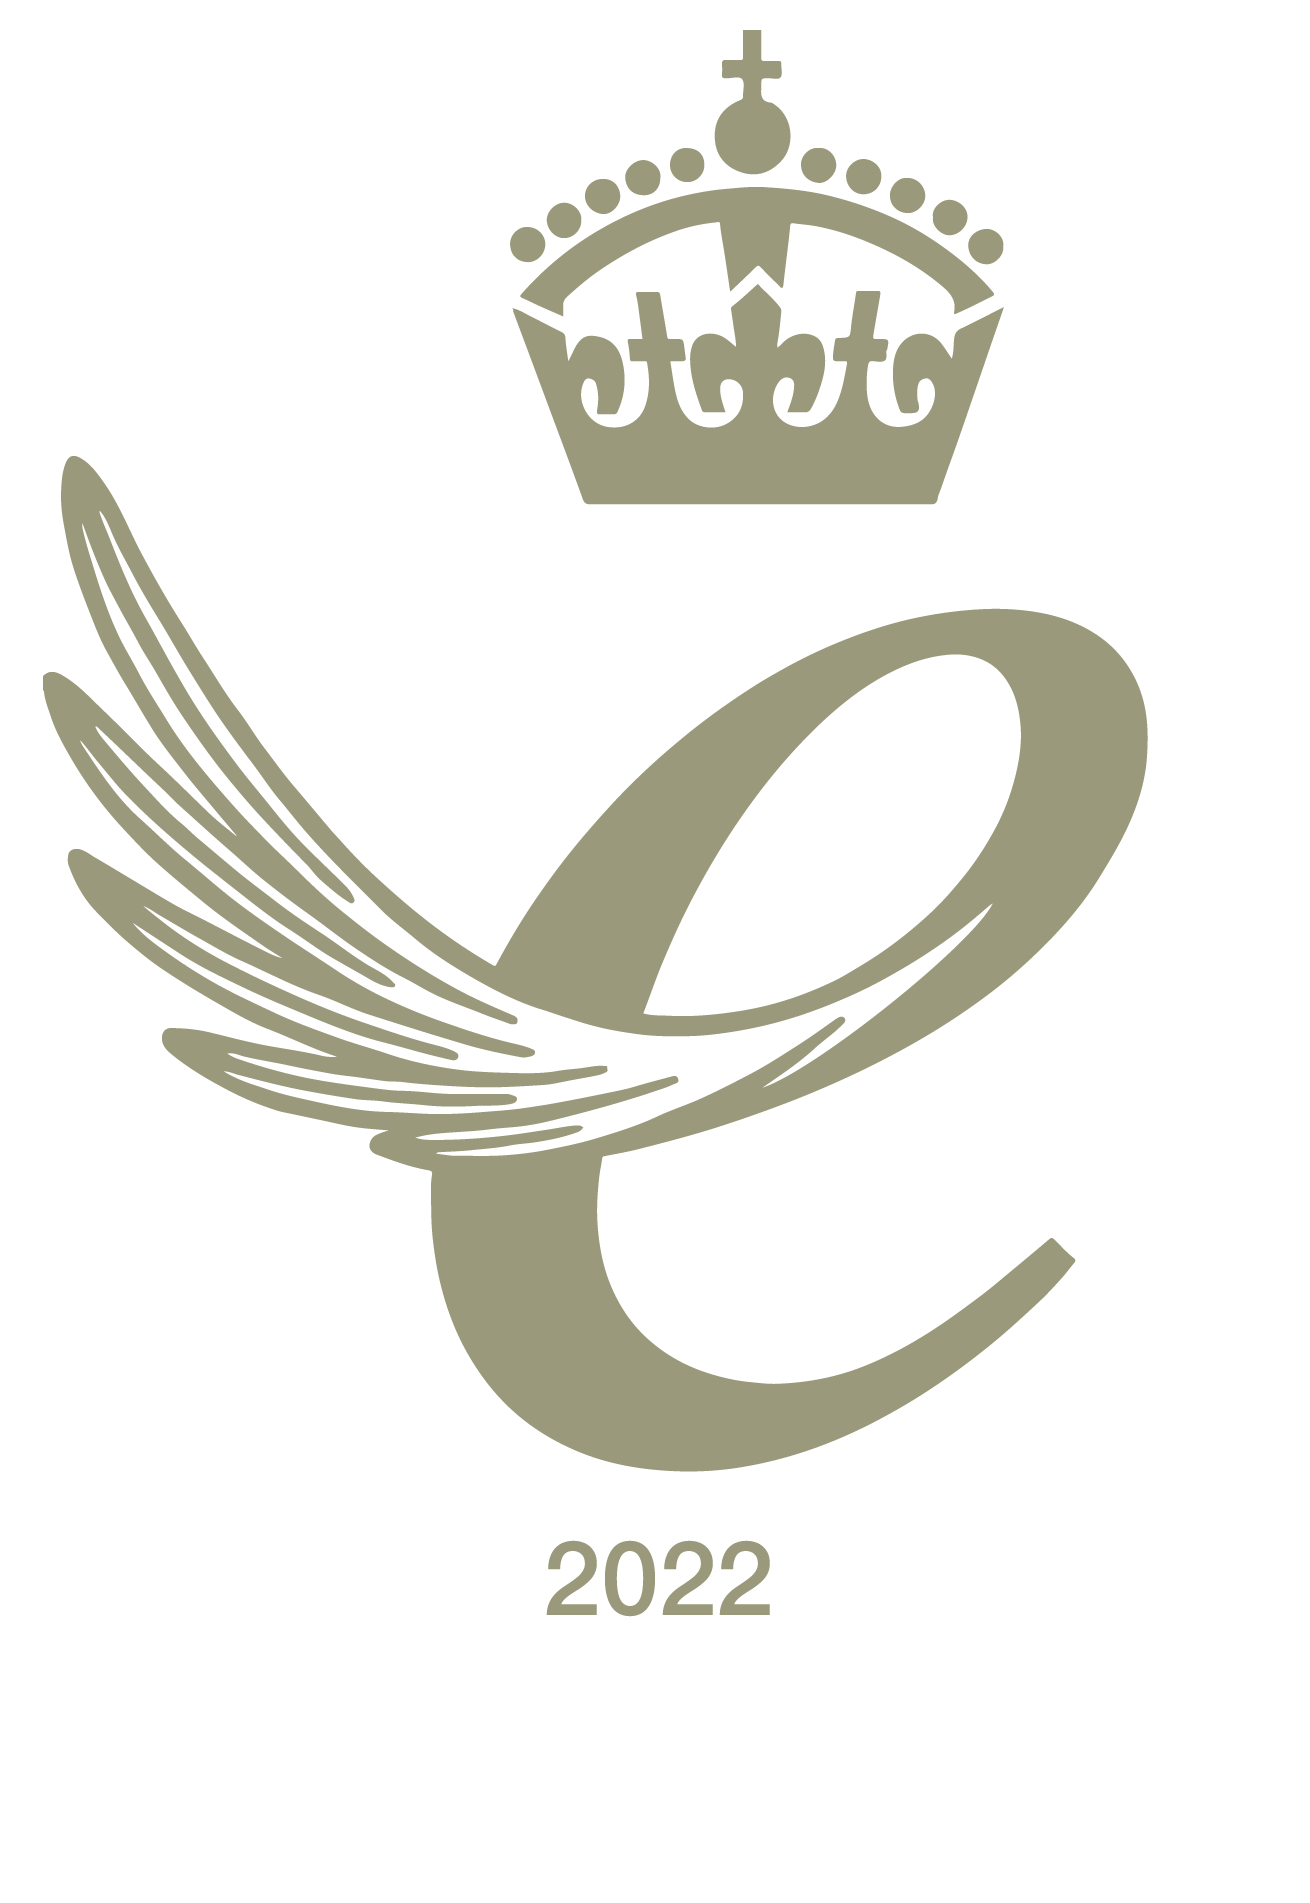 Queen's Award for Enterprise 2020